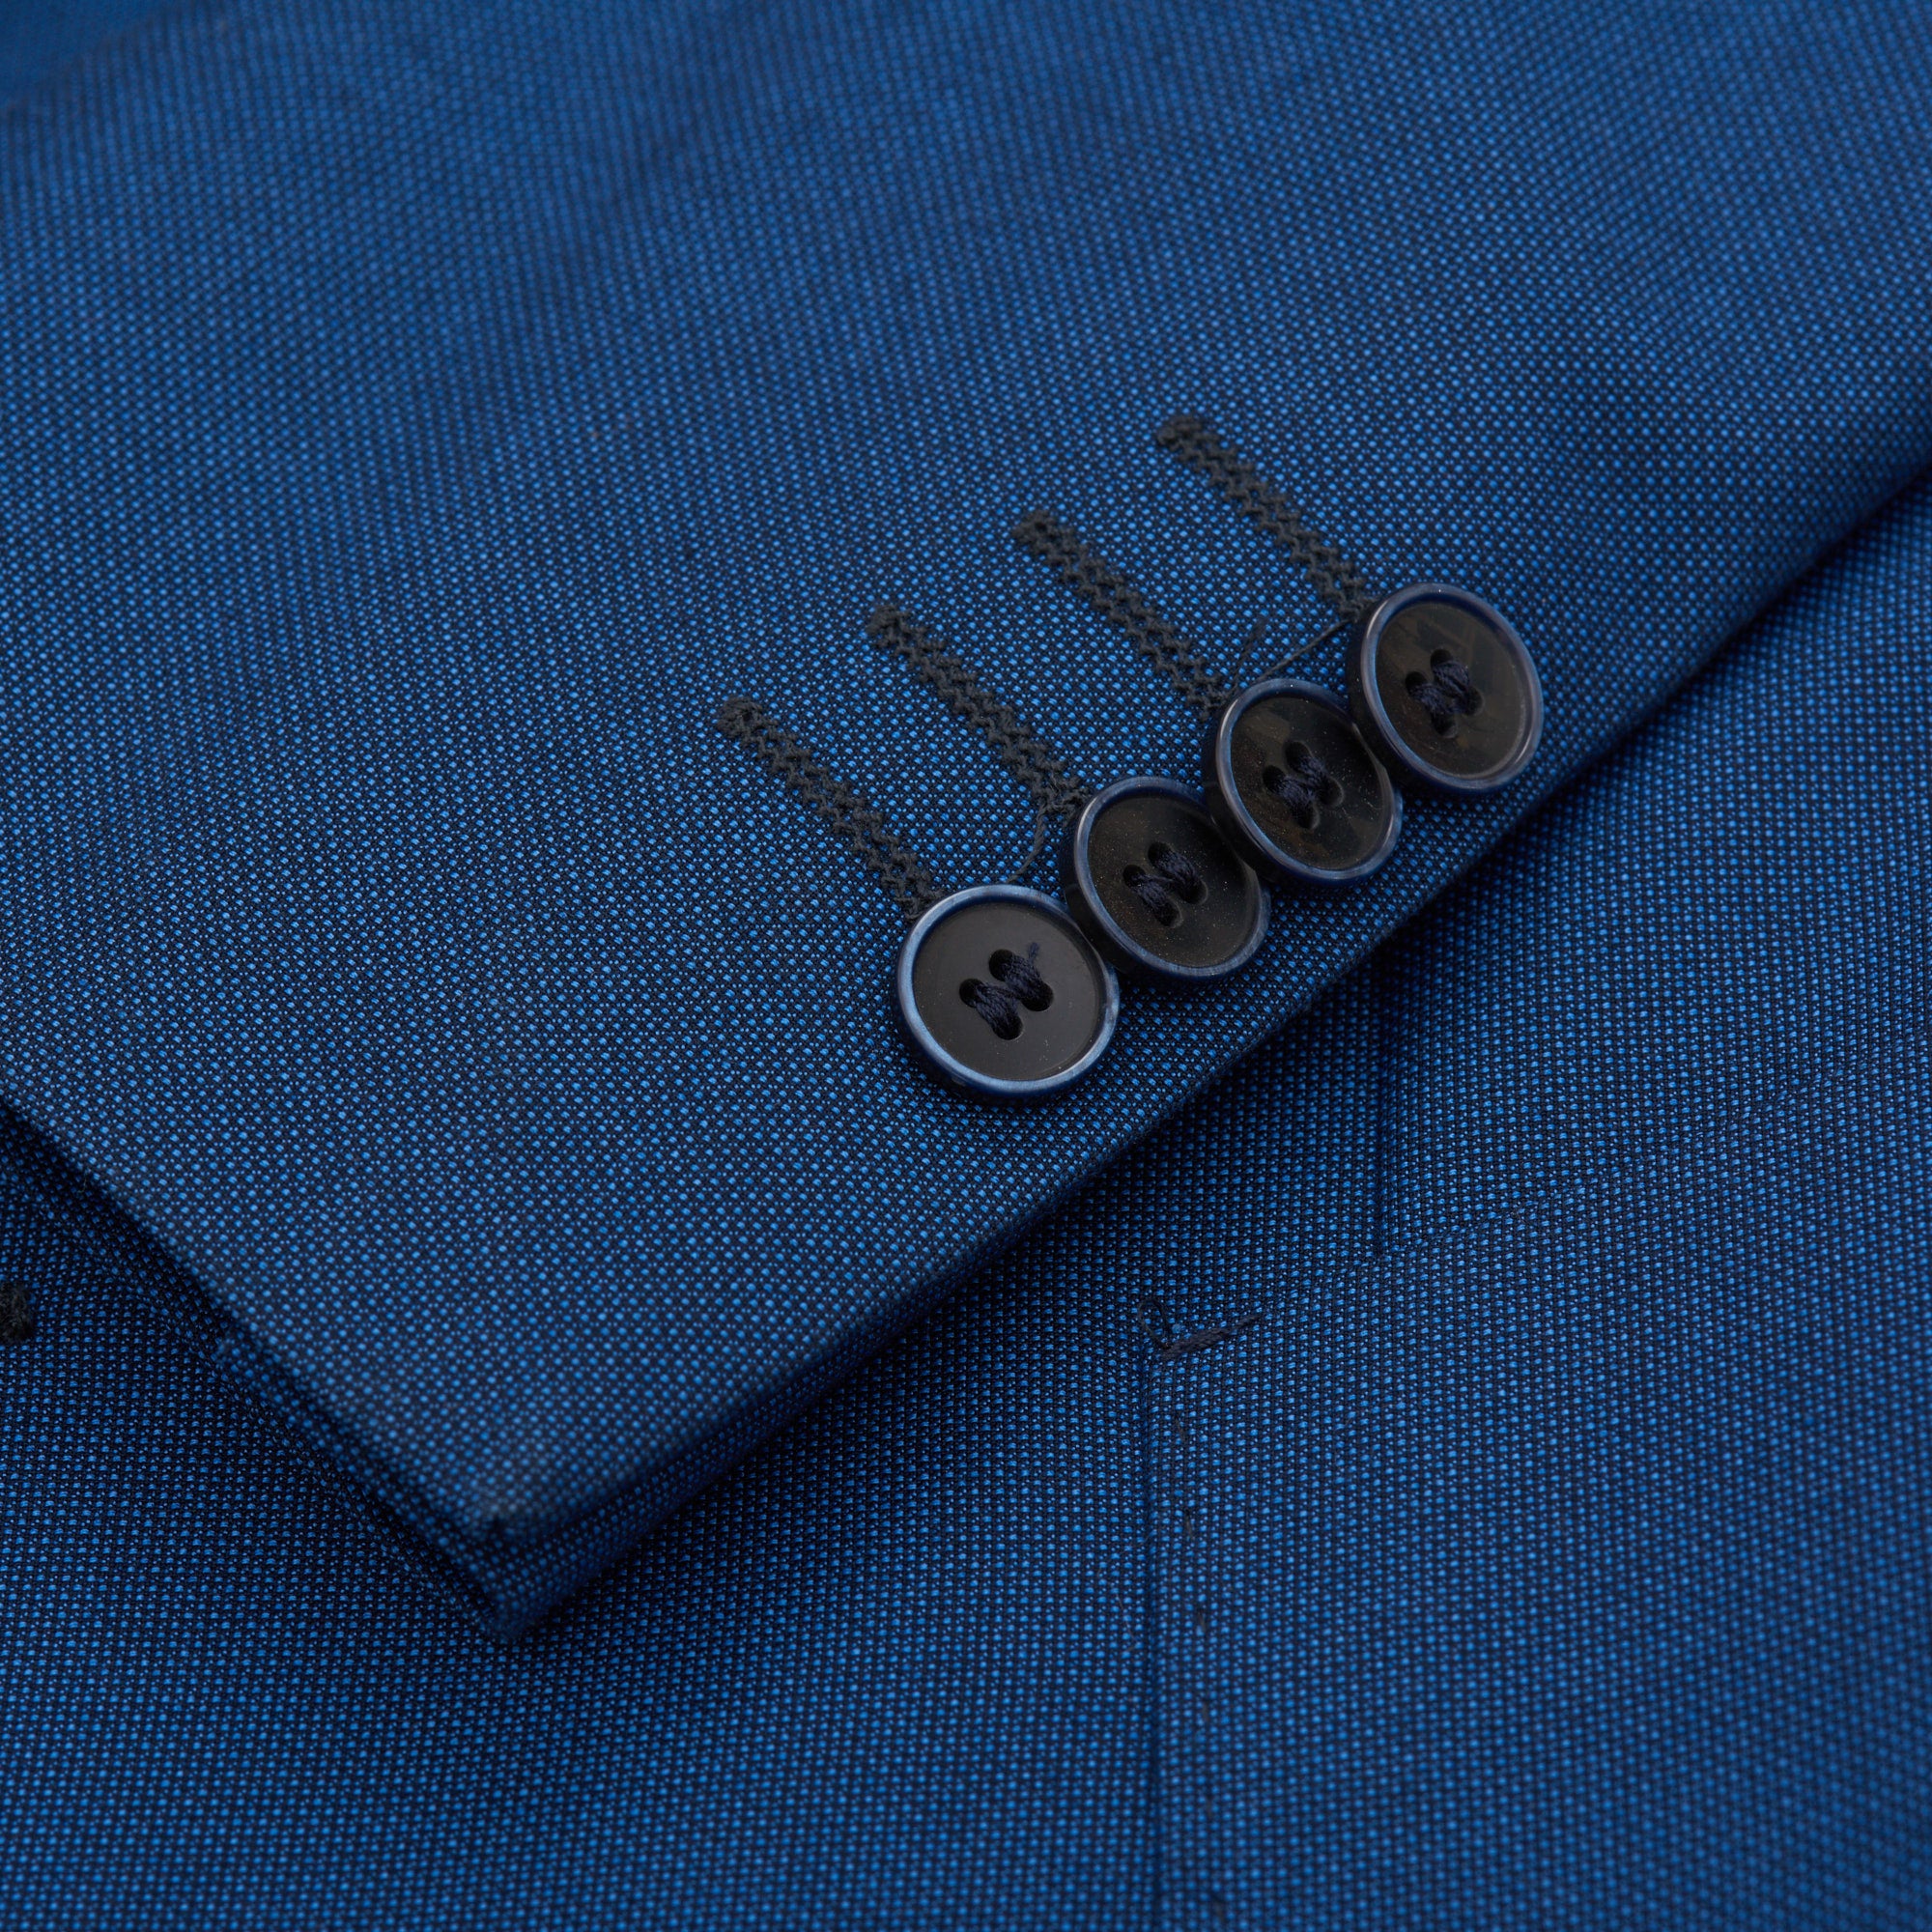 VINCENZO PALUMBO Napoli Blue Birdseye Wool Suit NEW VINCENZO PALUMBO